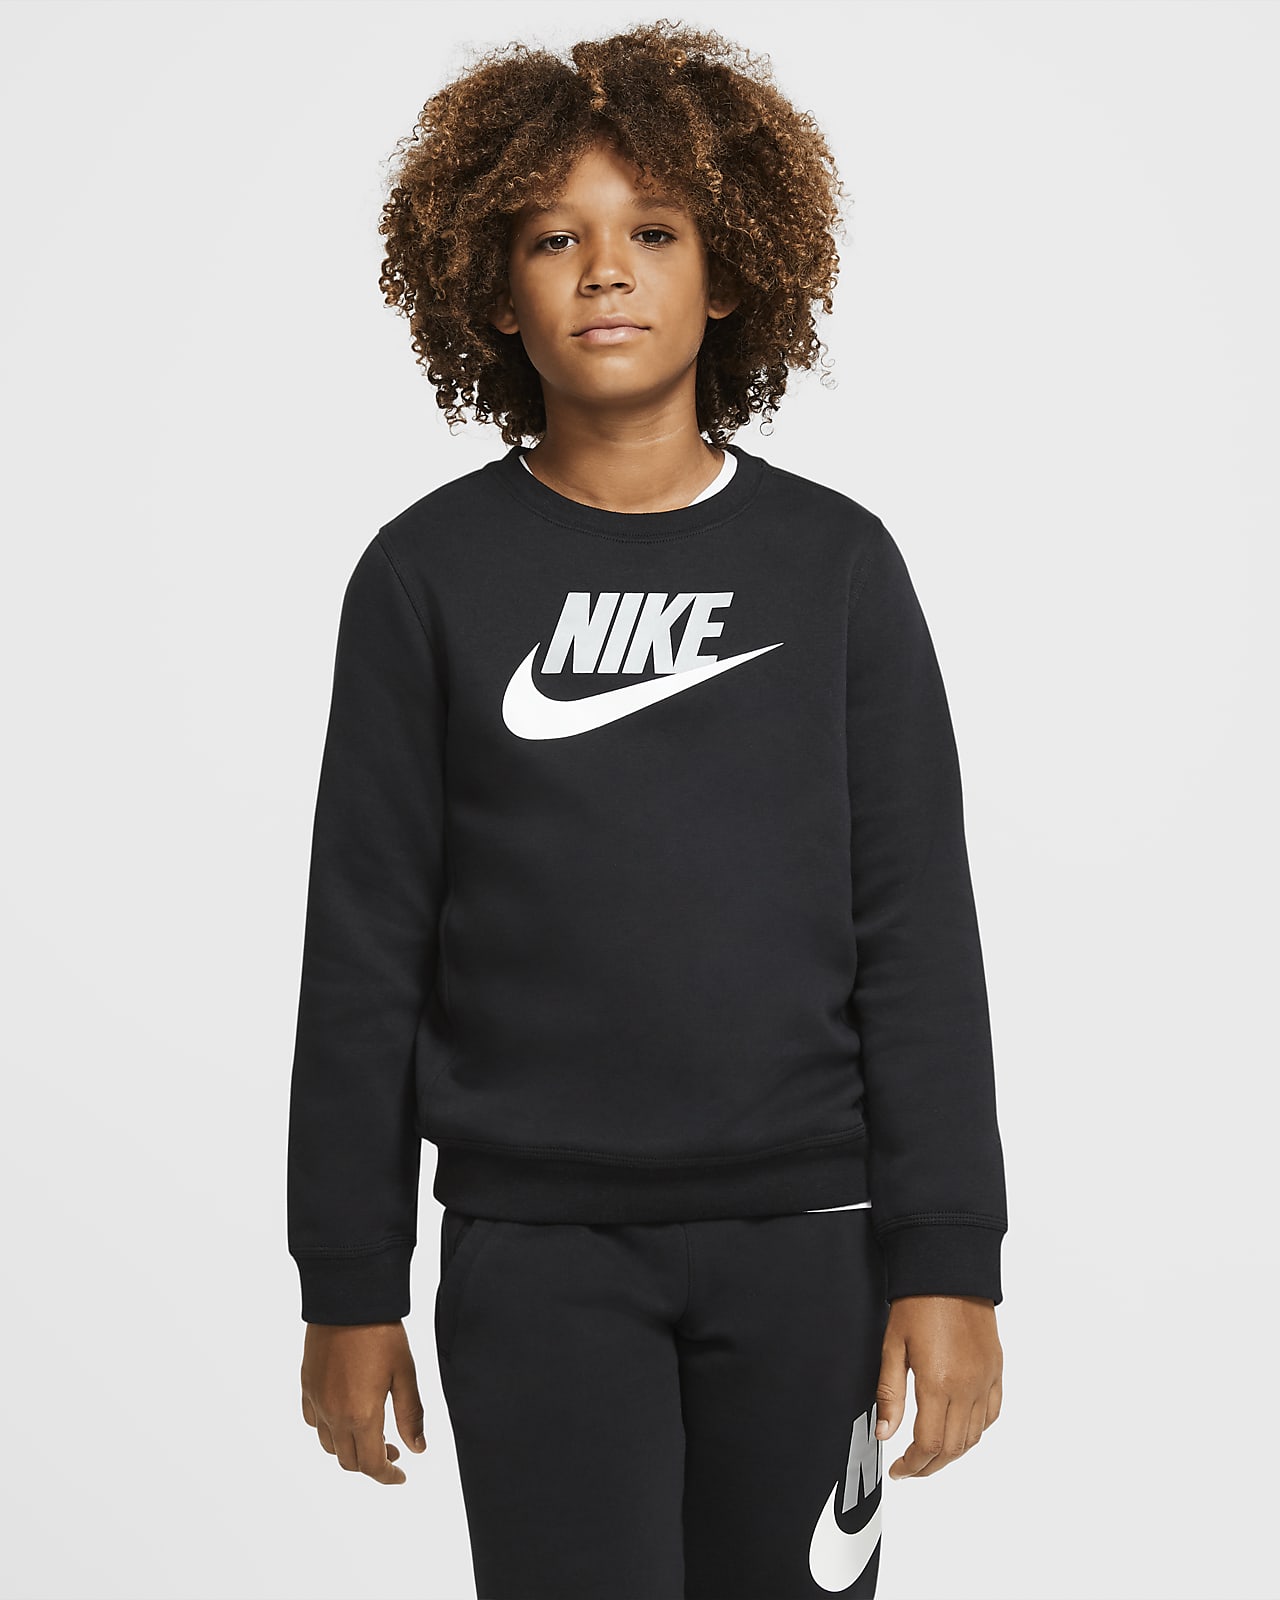 amplitude lanthaan Word gek Bluza dla dużych dzieci (chłopców) Nike Sportswear Club Fleece. Nike PL